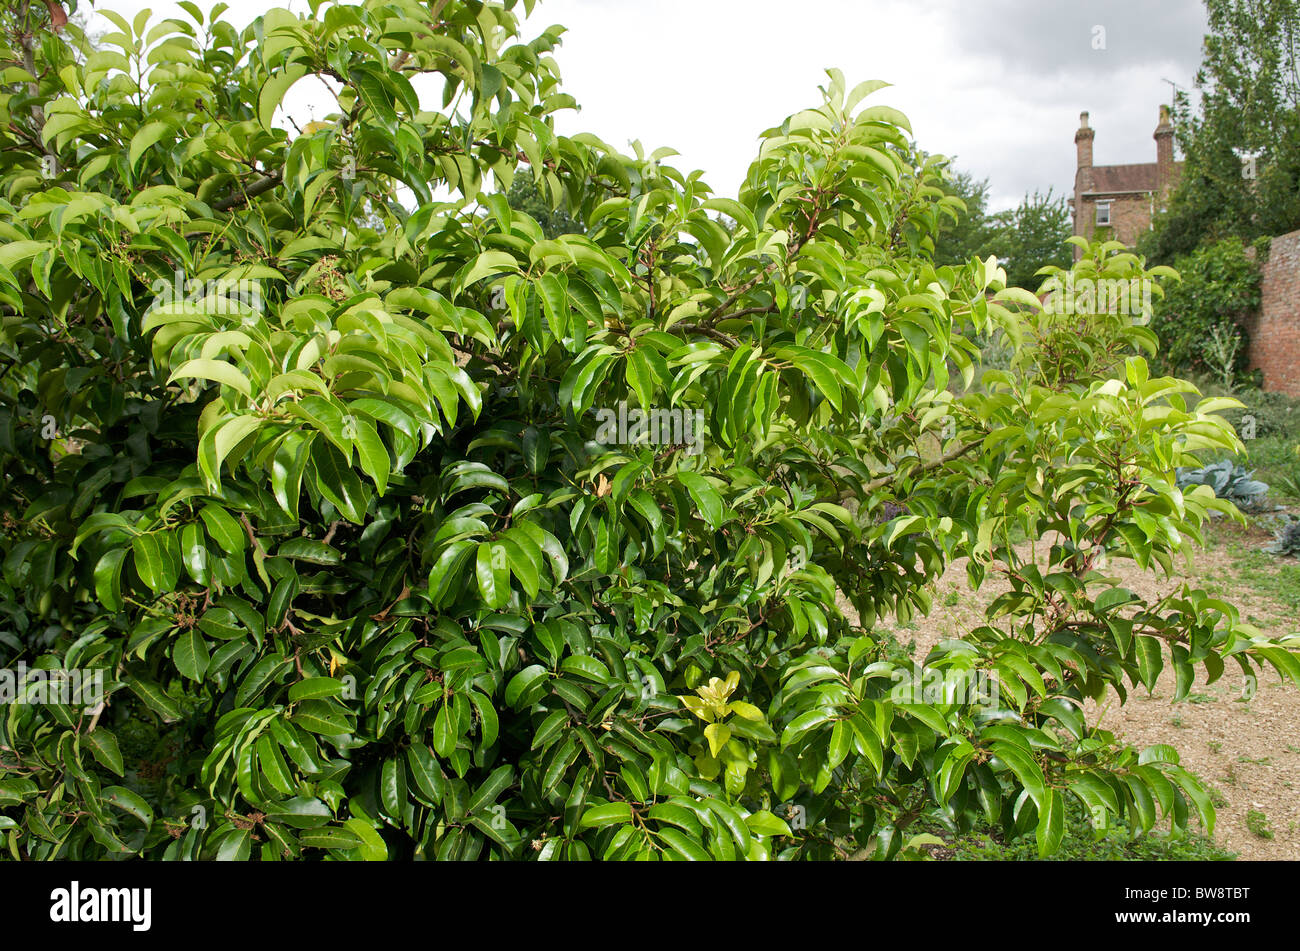 Portuguese Laurel (Prunus lusitanica subsp. azorica) Stock Photo